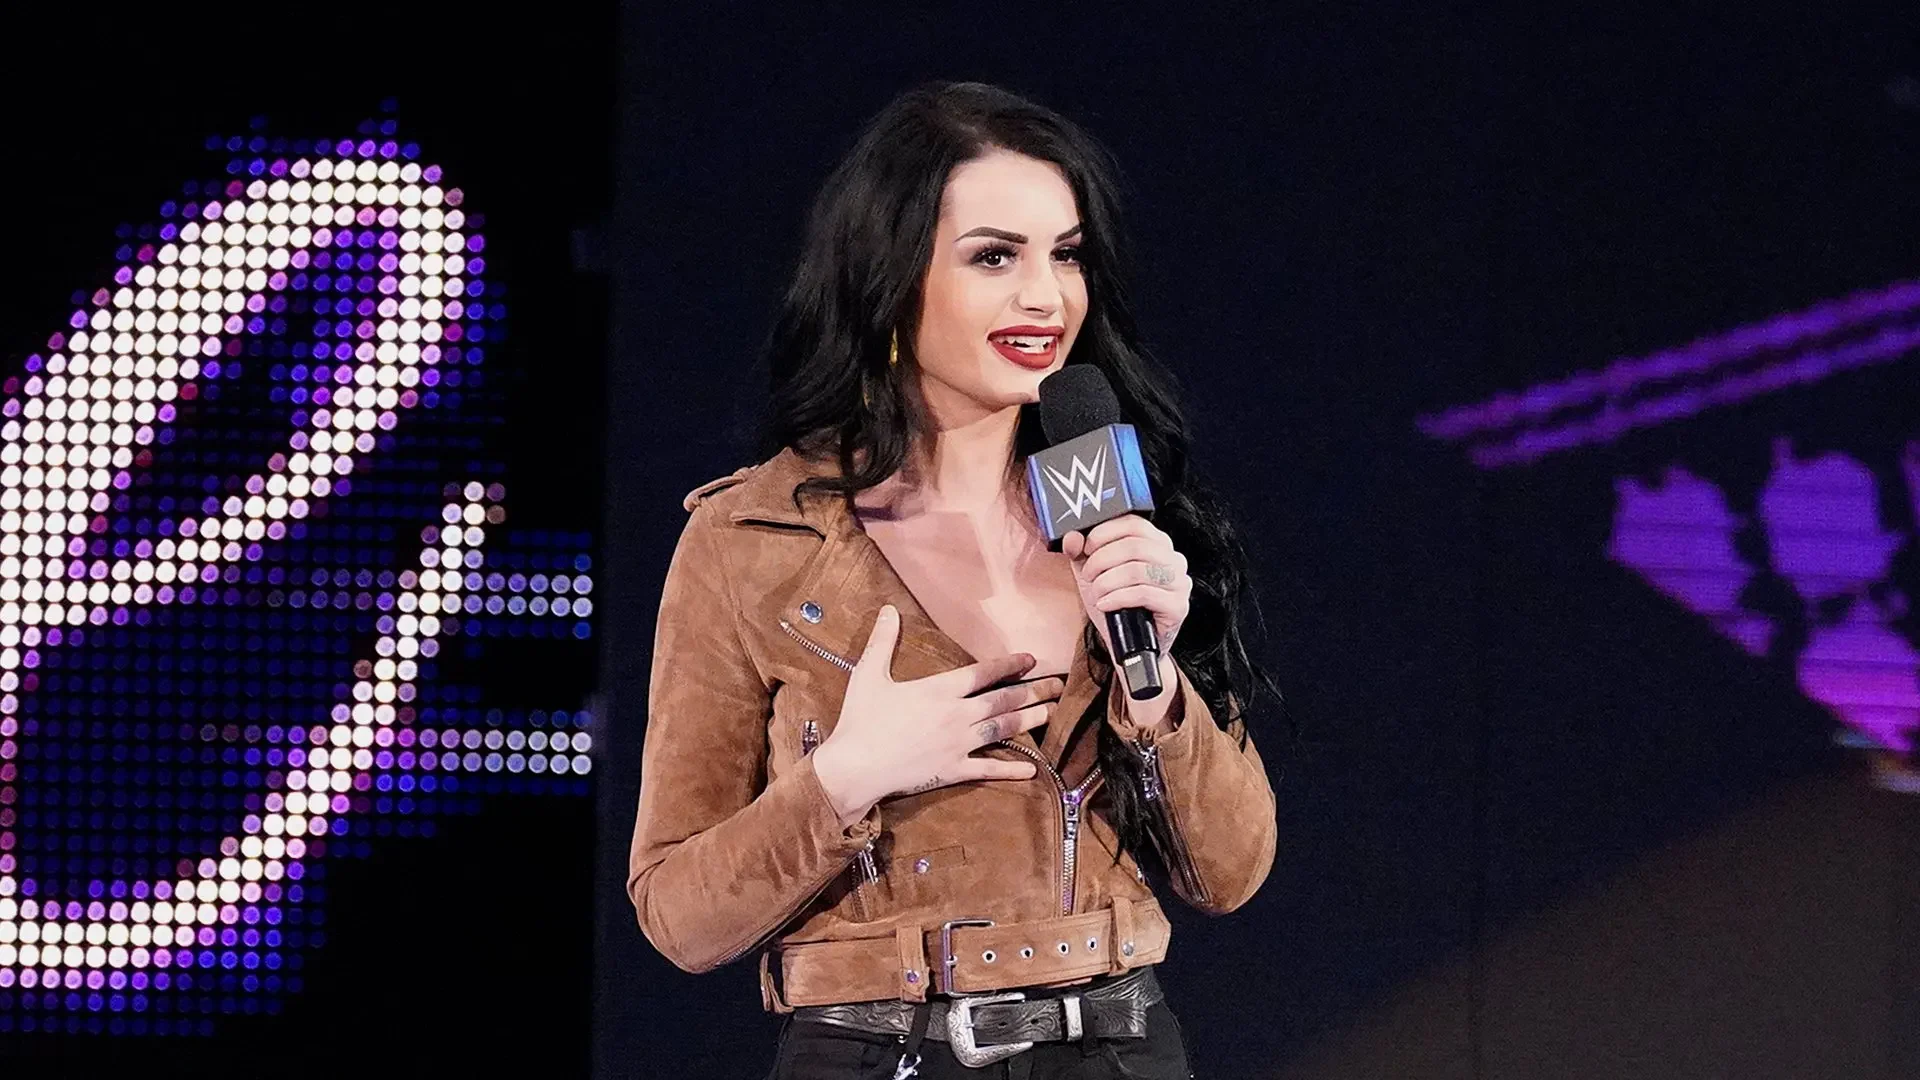 Paige's Wrestling Return Date Announces